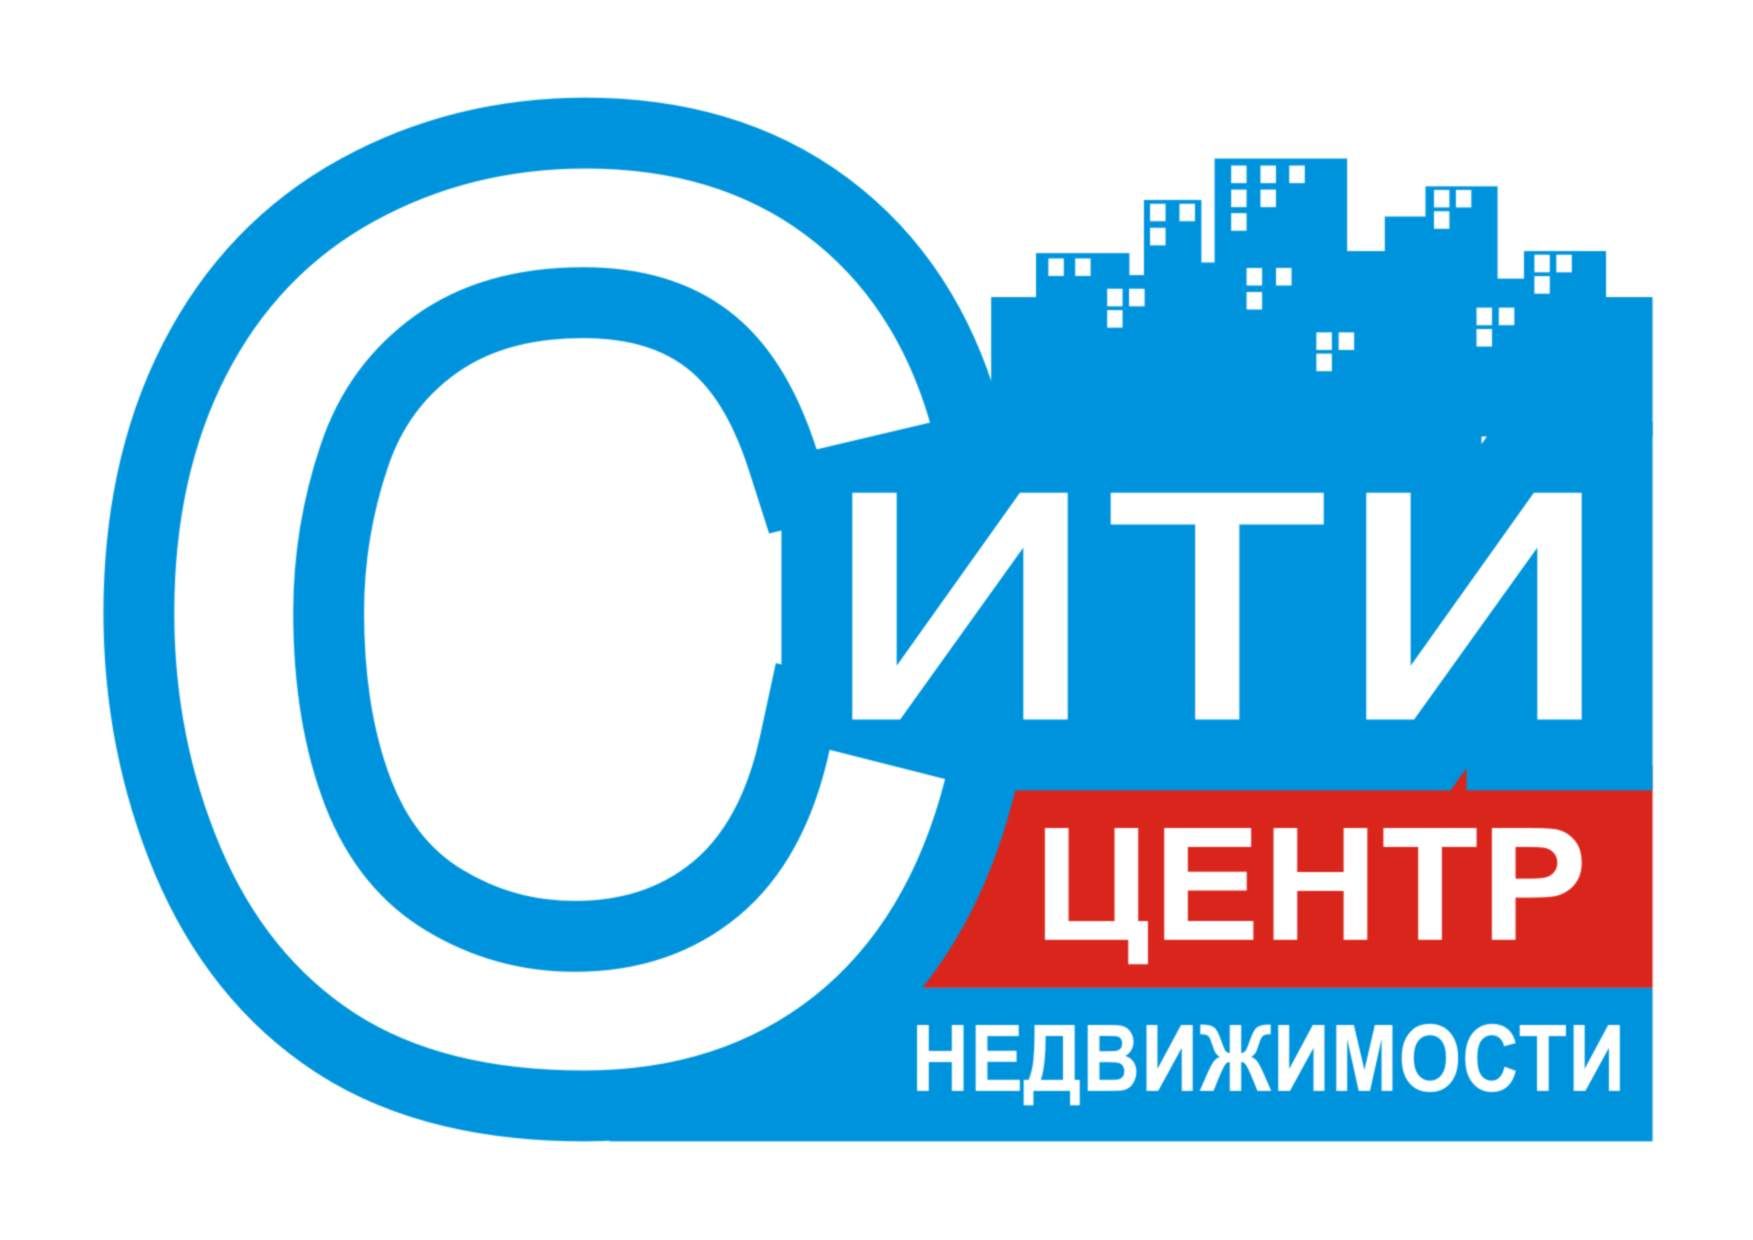 Редизайн логотипа агентства недвижимости - дизайнер xlop007